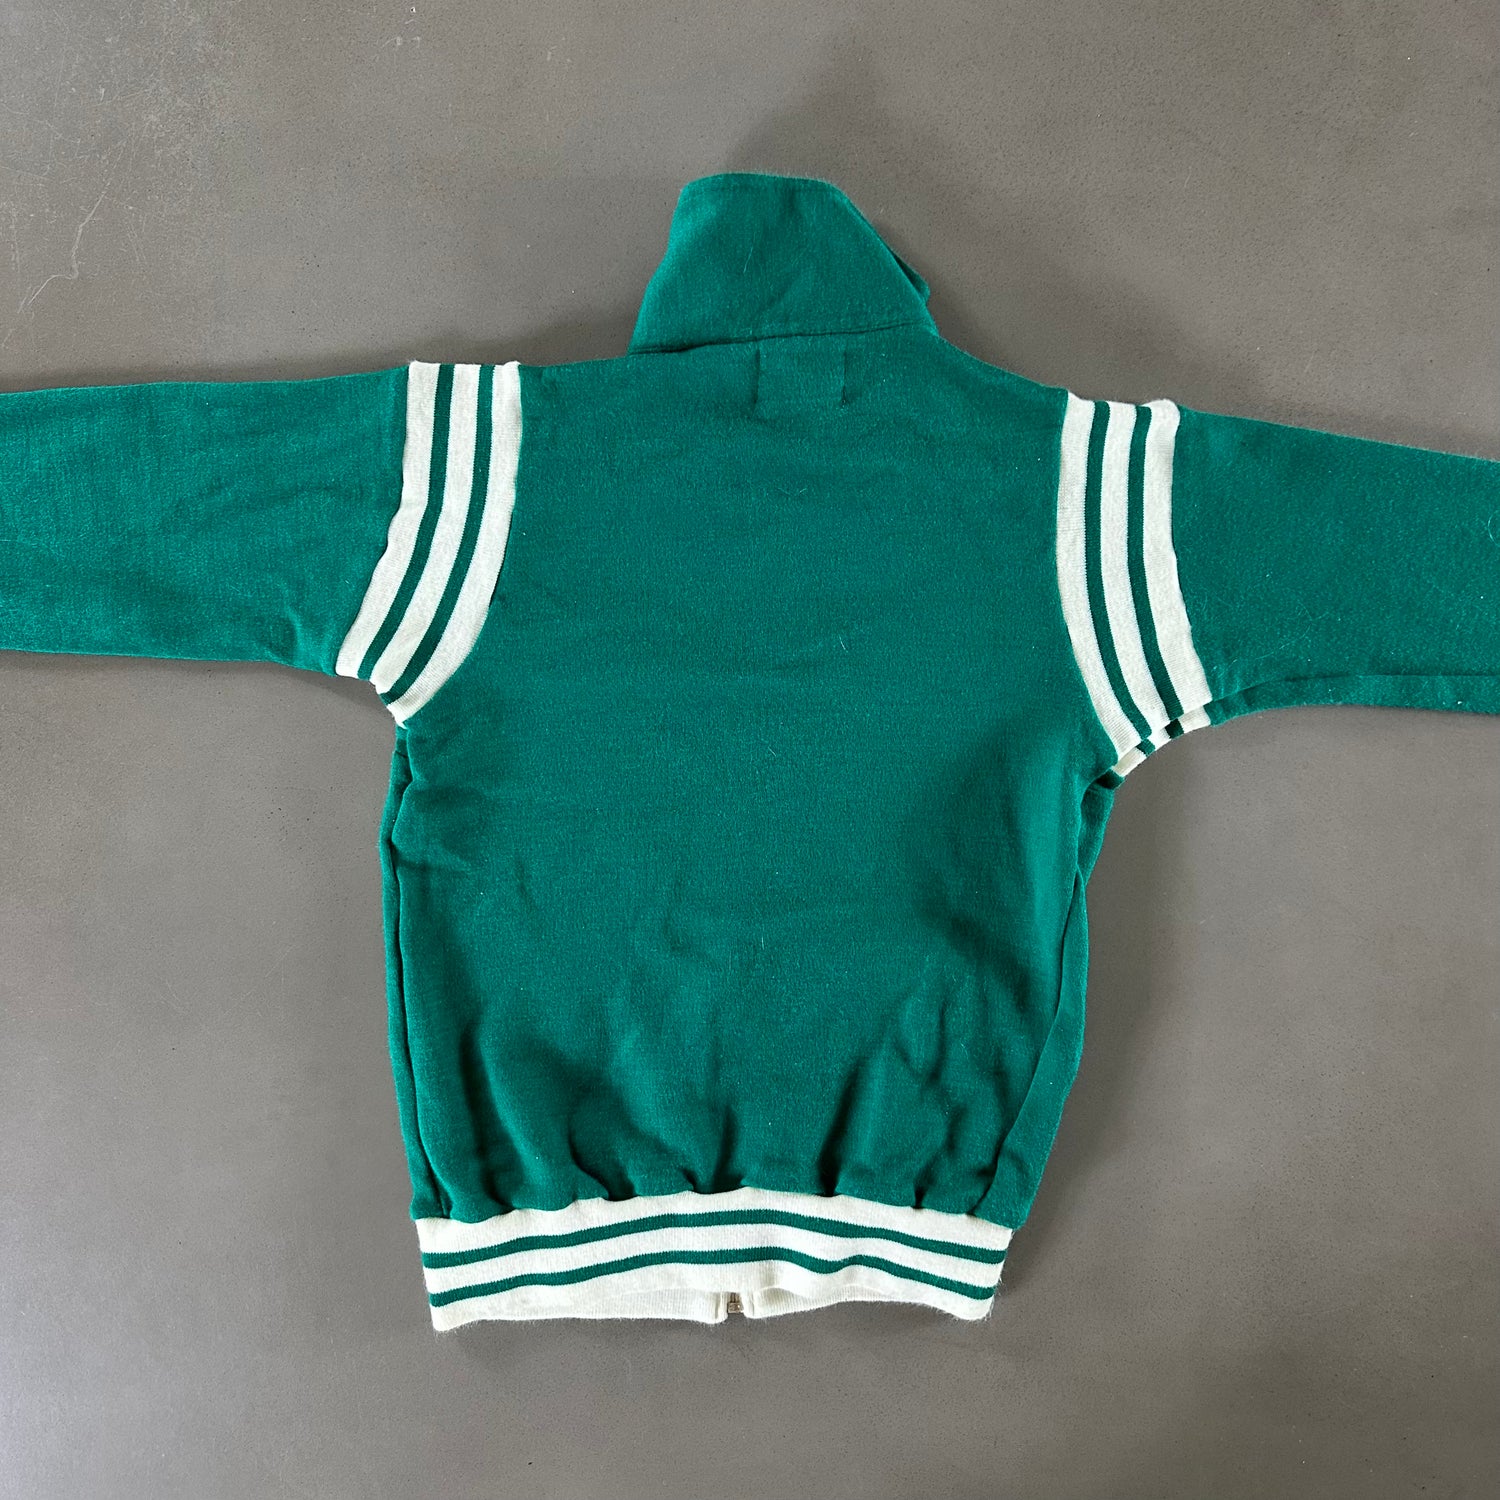 Vintage 1980s Zip Up Sweatshirt size Small